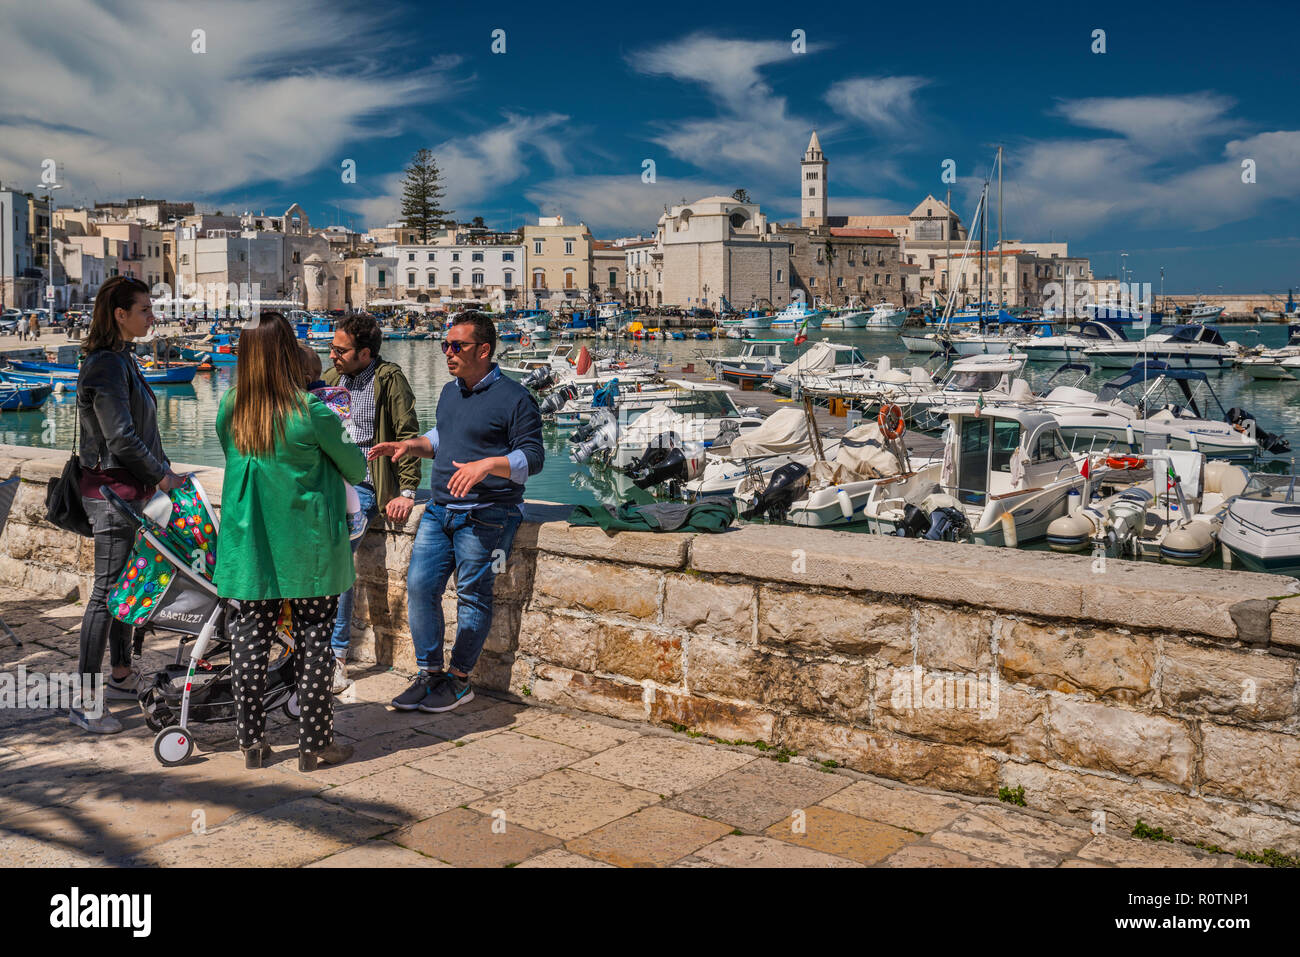 Il gruppo di amici a waterfront, centro storico in distanza, Trani, Puglia, Italia Foto Stock